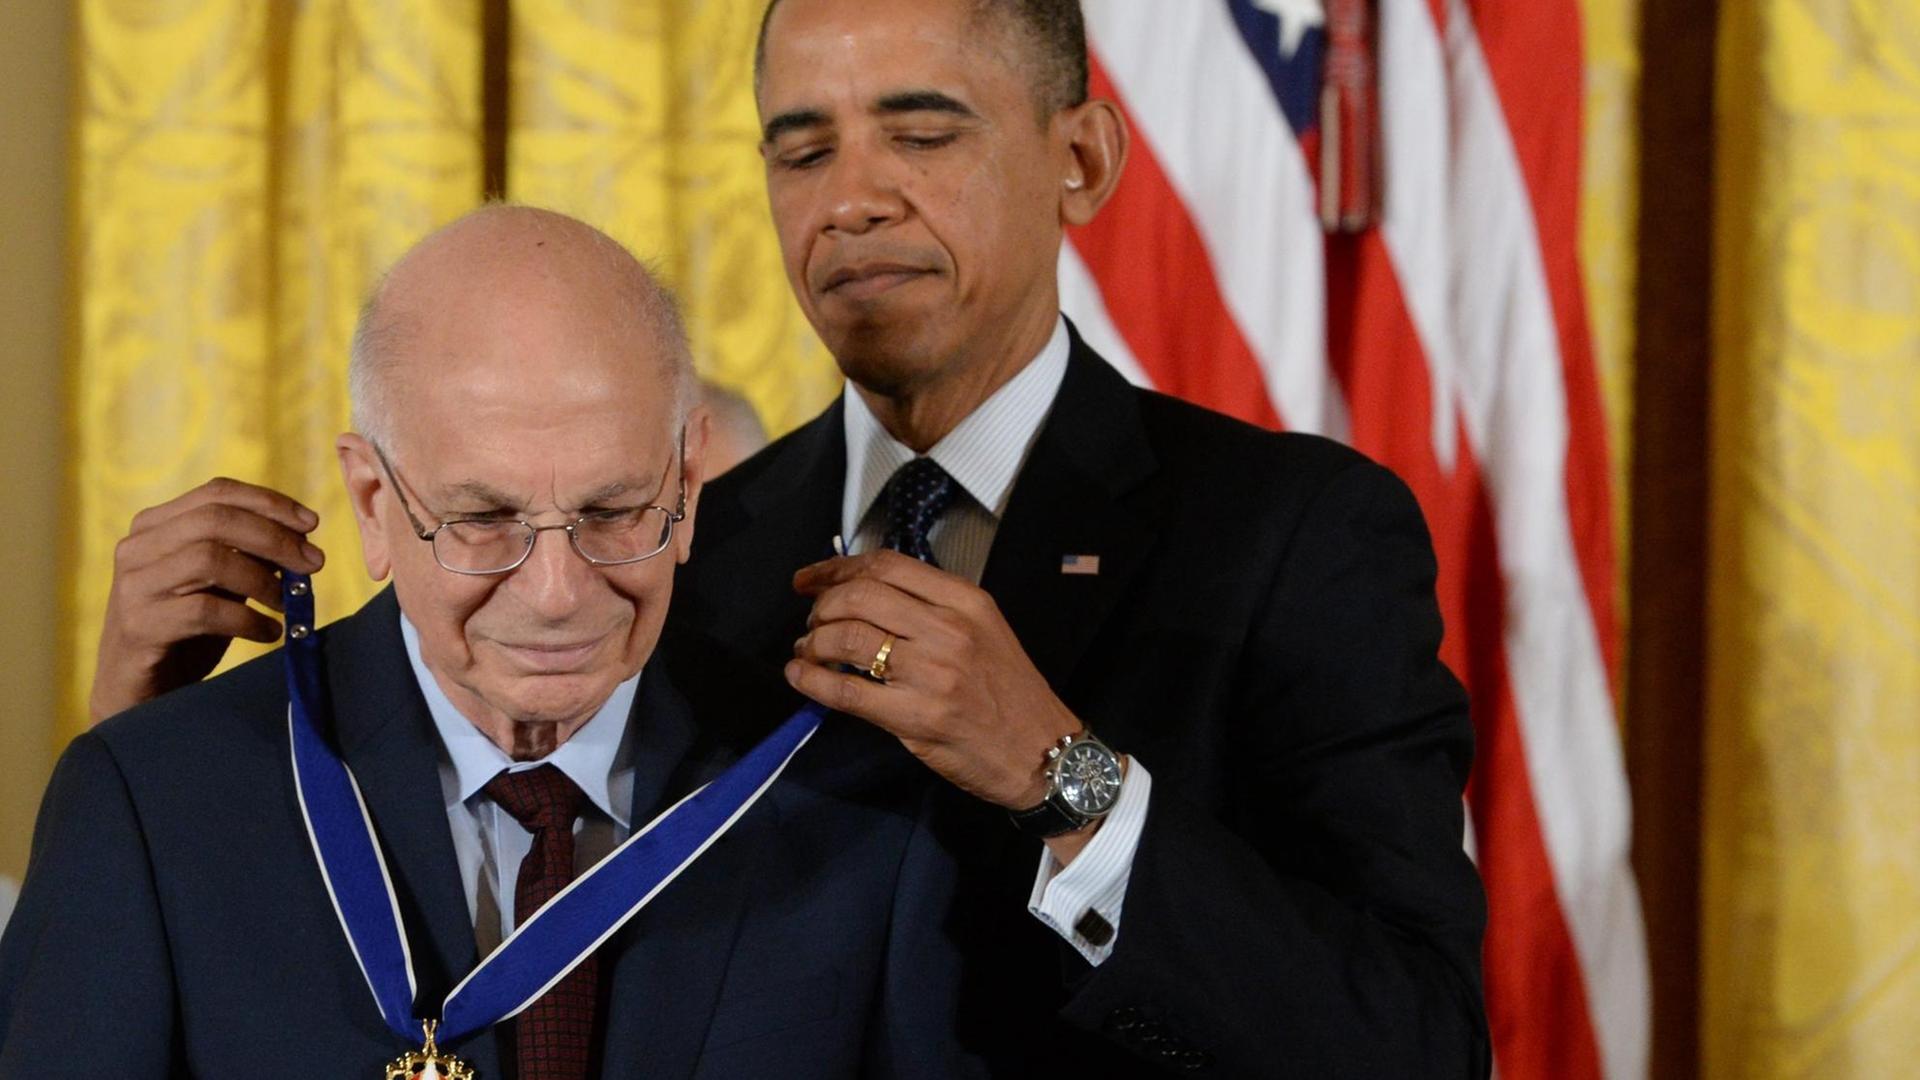 Der israelisch-amerikanische Psychologe Daniel Kahneman (L) erhält von US-Präsident Barack Obama die Freiheitsmedaille überreicht, in Washington am 20. November 2013.